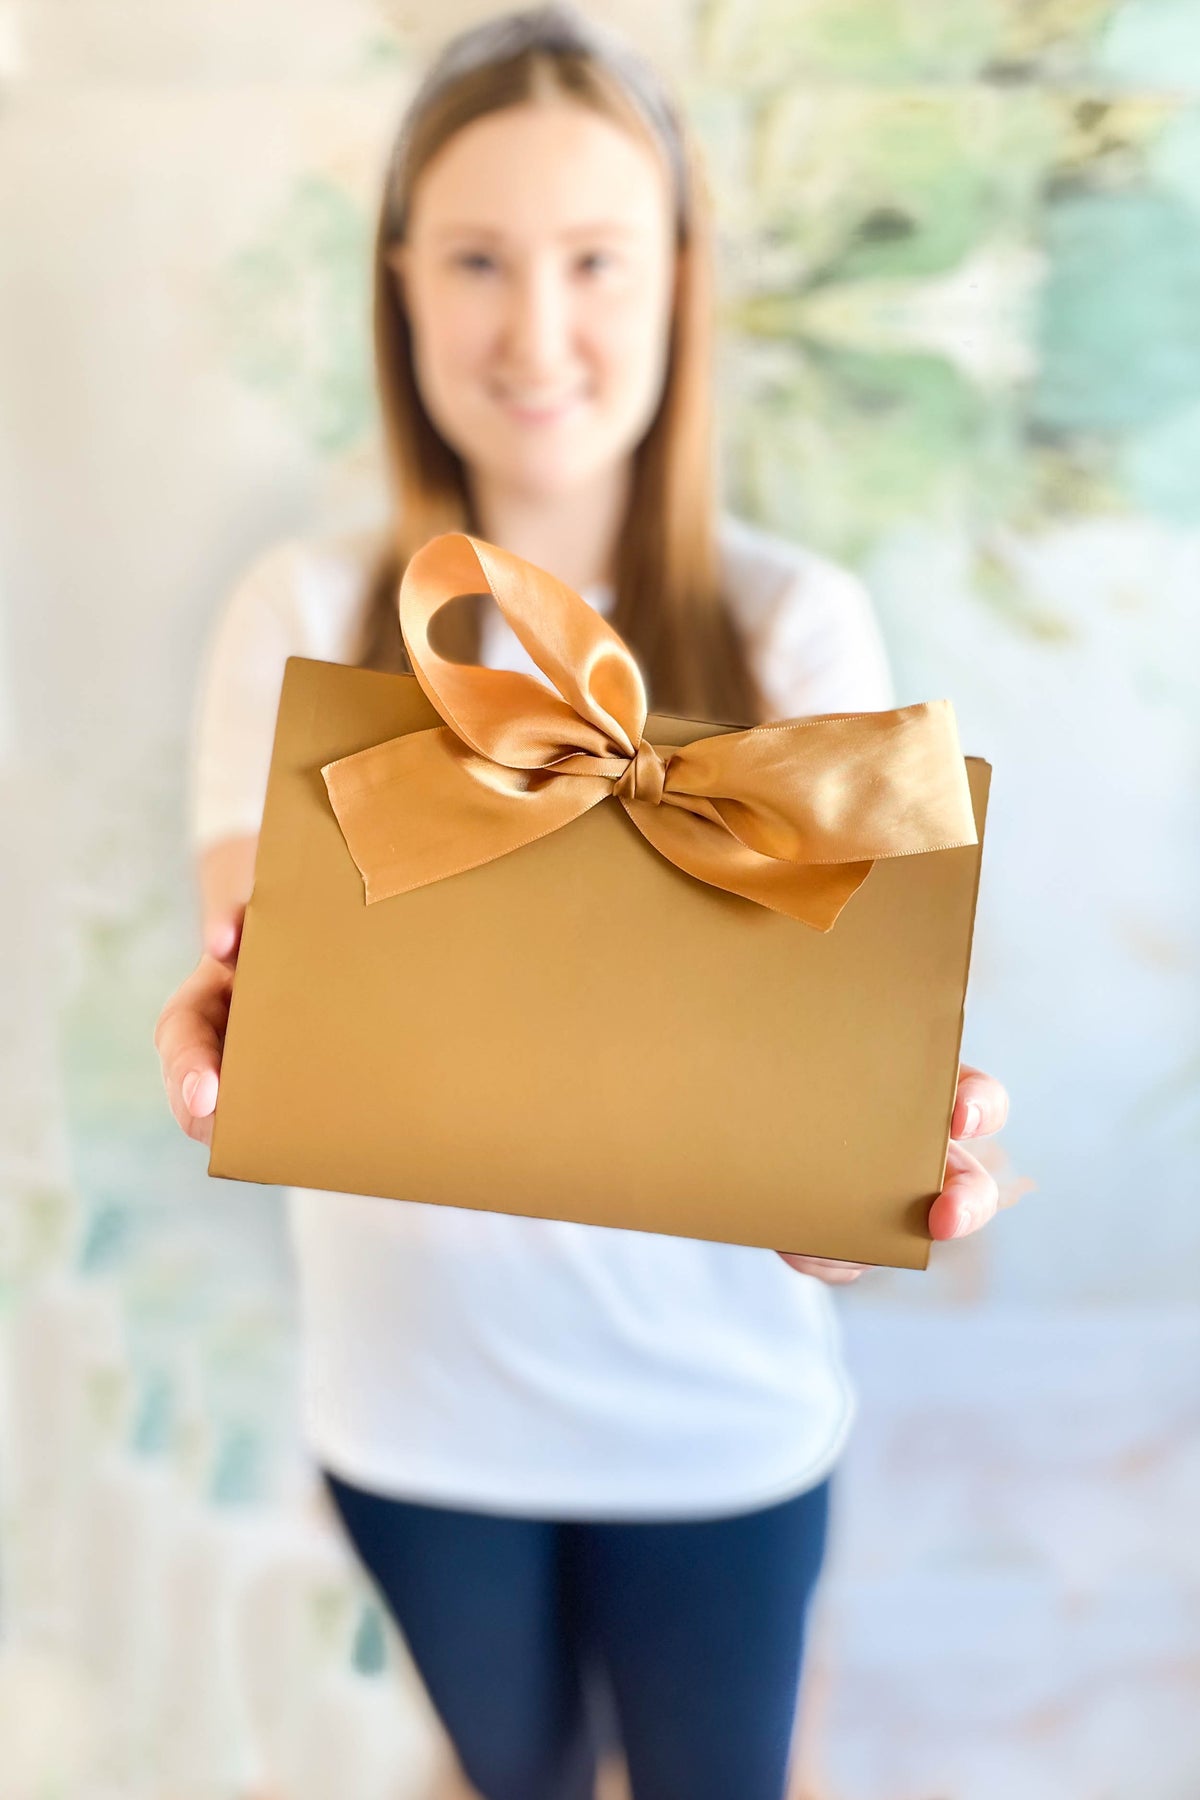 Bridesmaid Gift Box - Gift Box with Bow